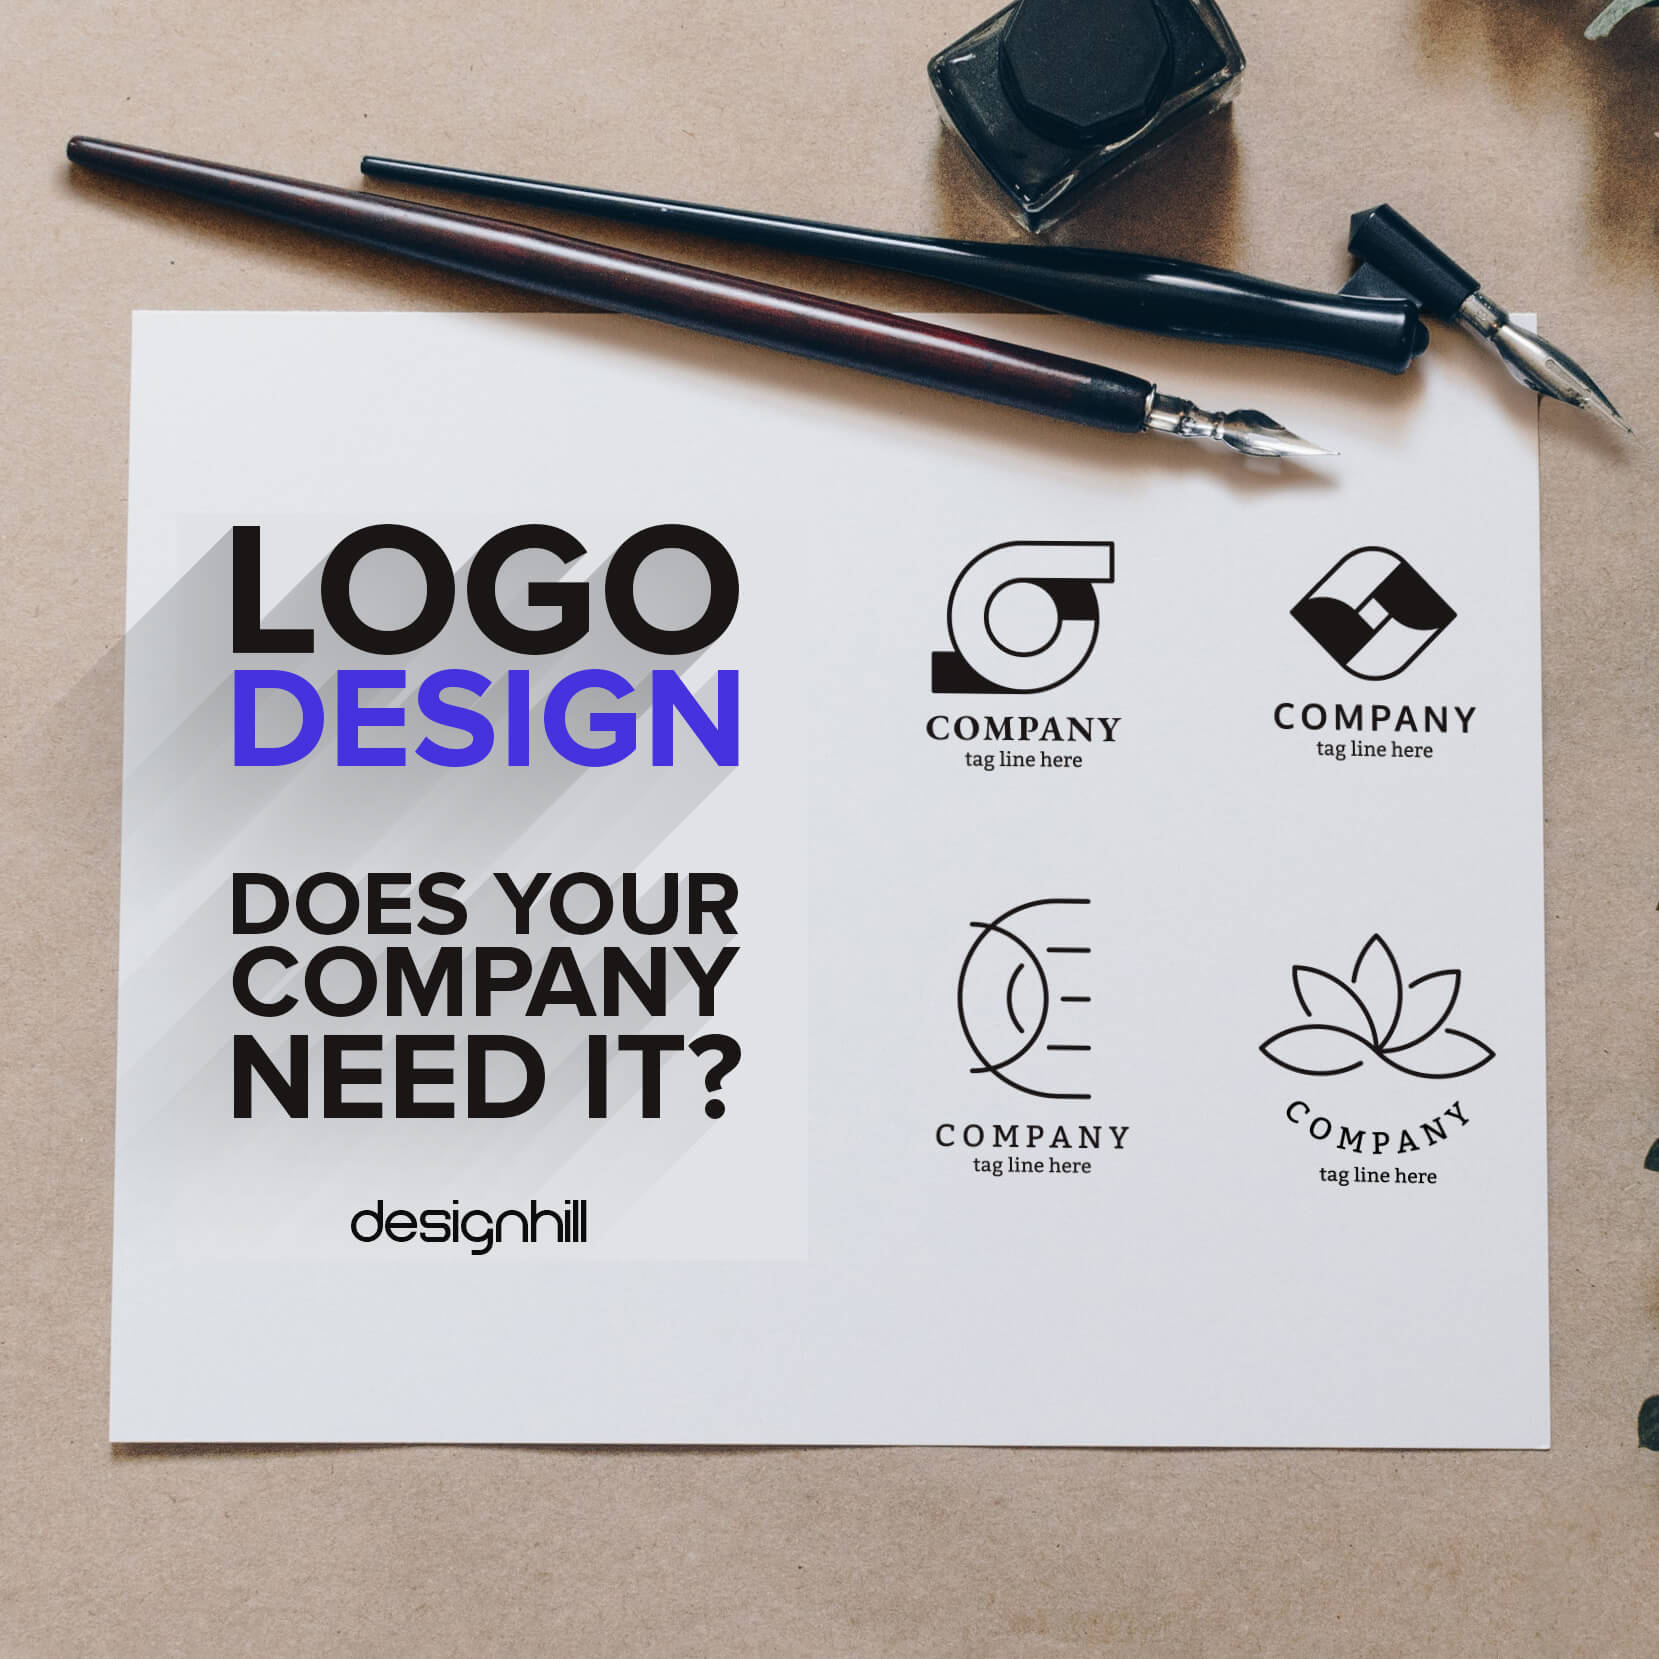 How to design a logo? Logo design ideas for businesses